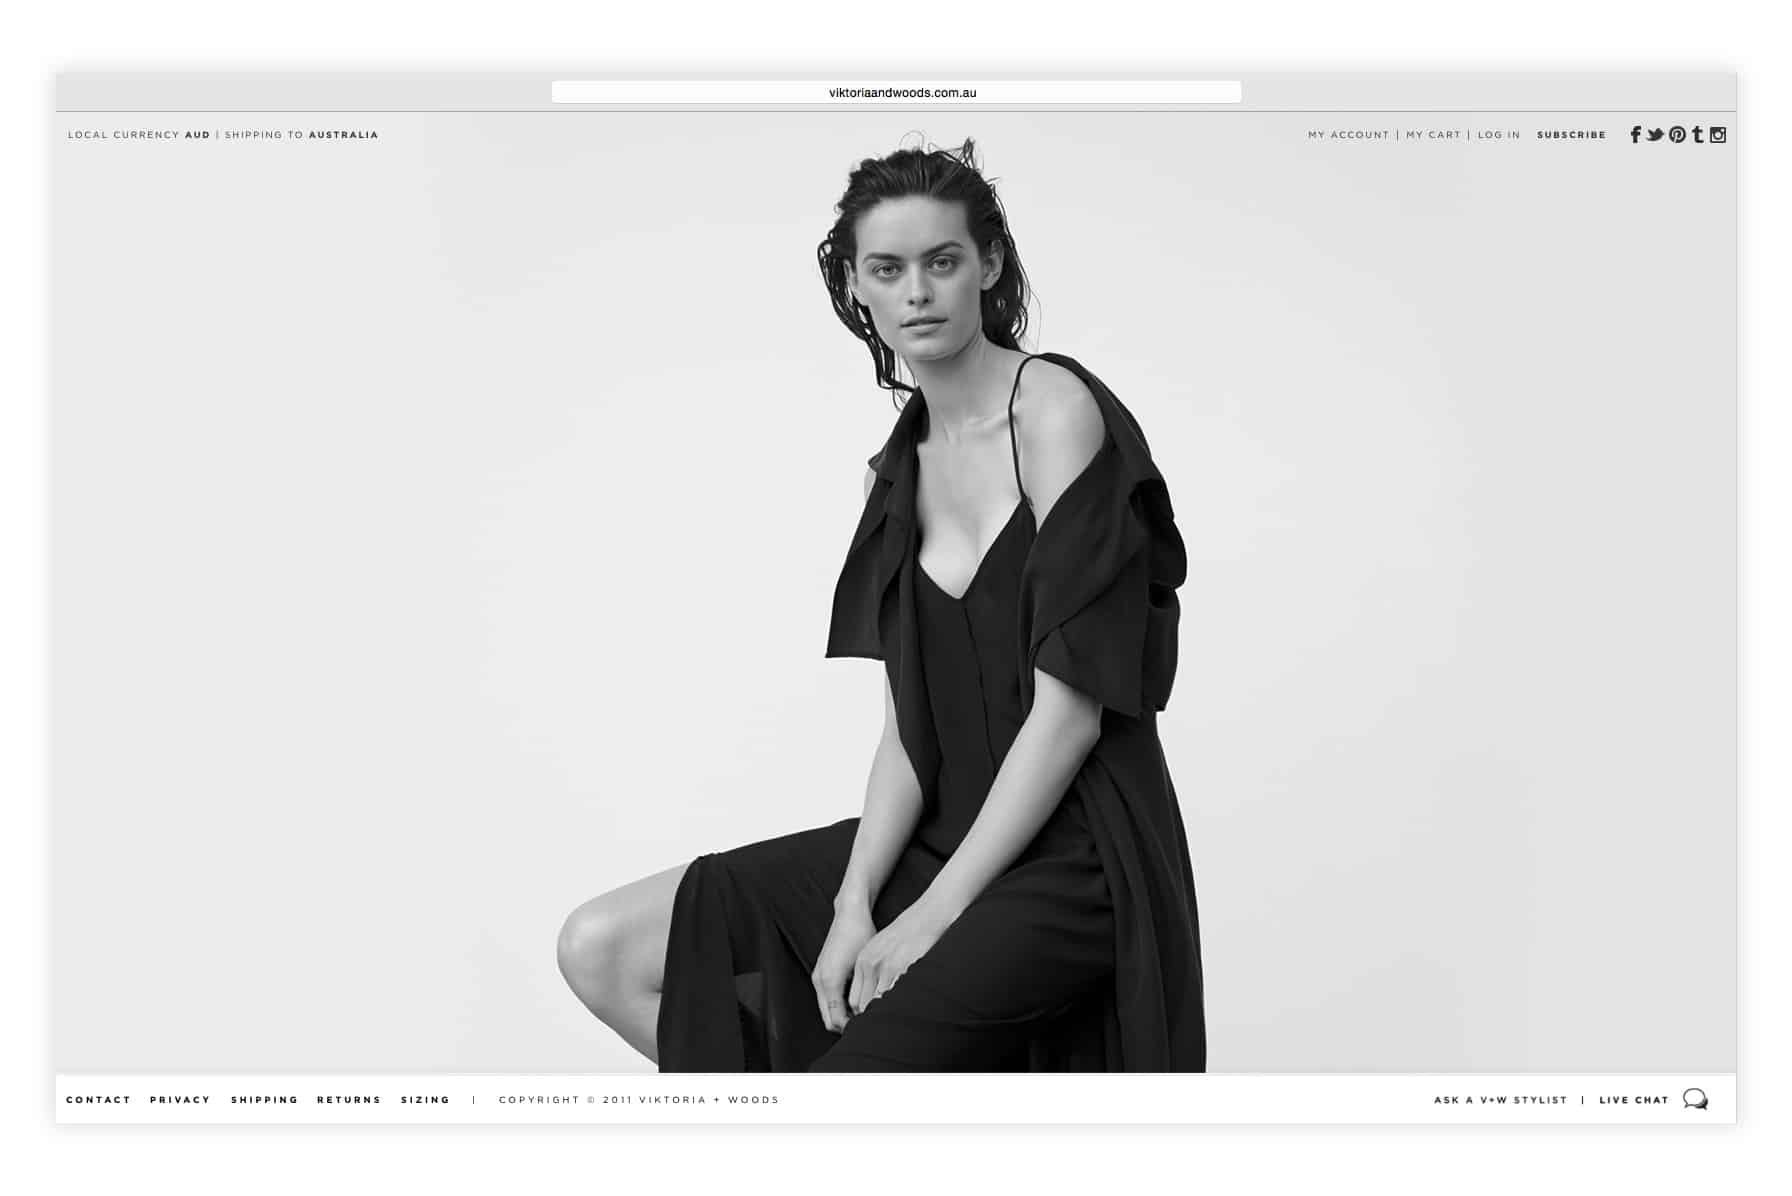 VIKTORIA + WOODS Website Design